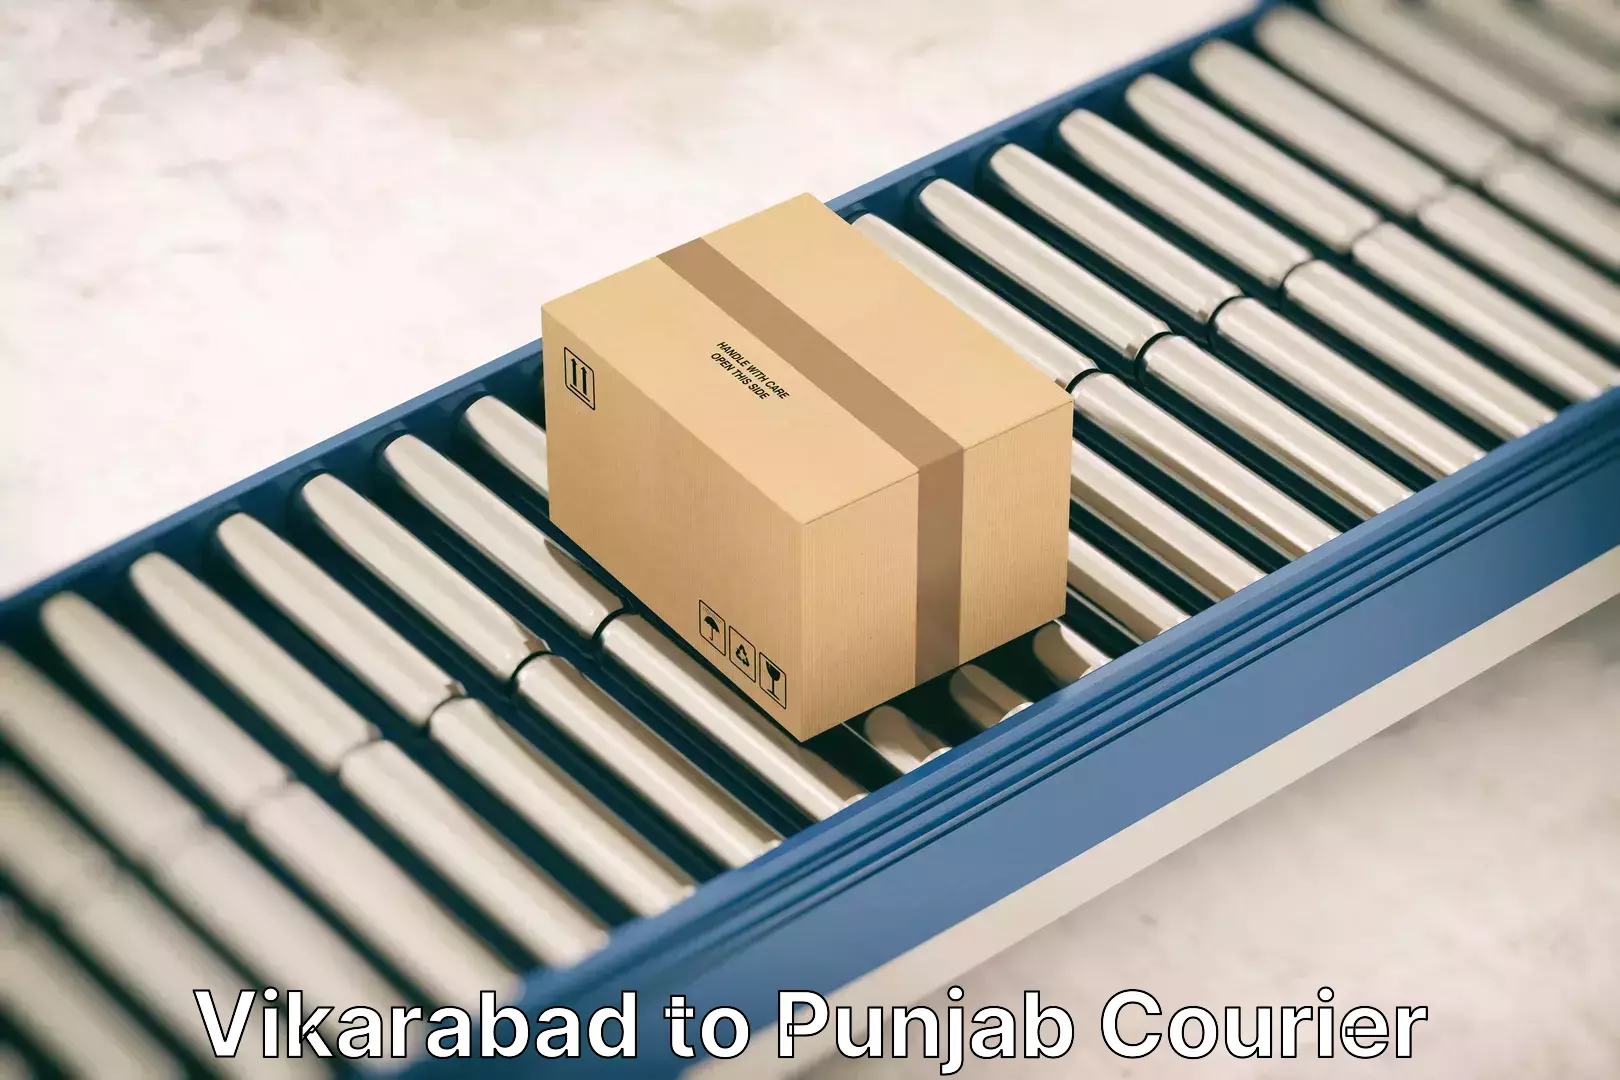 Reliable movers Vikarabad to Punjab